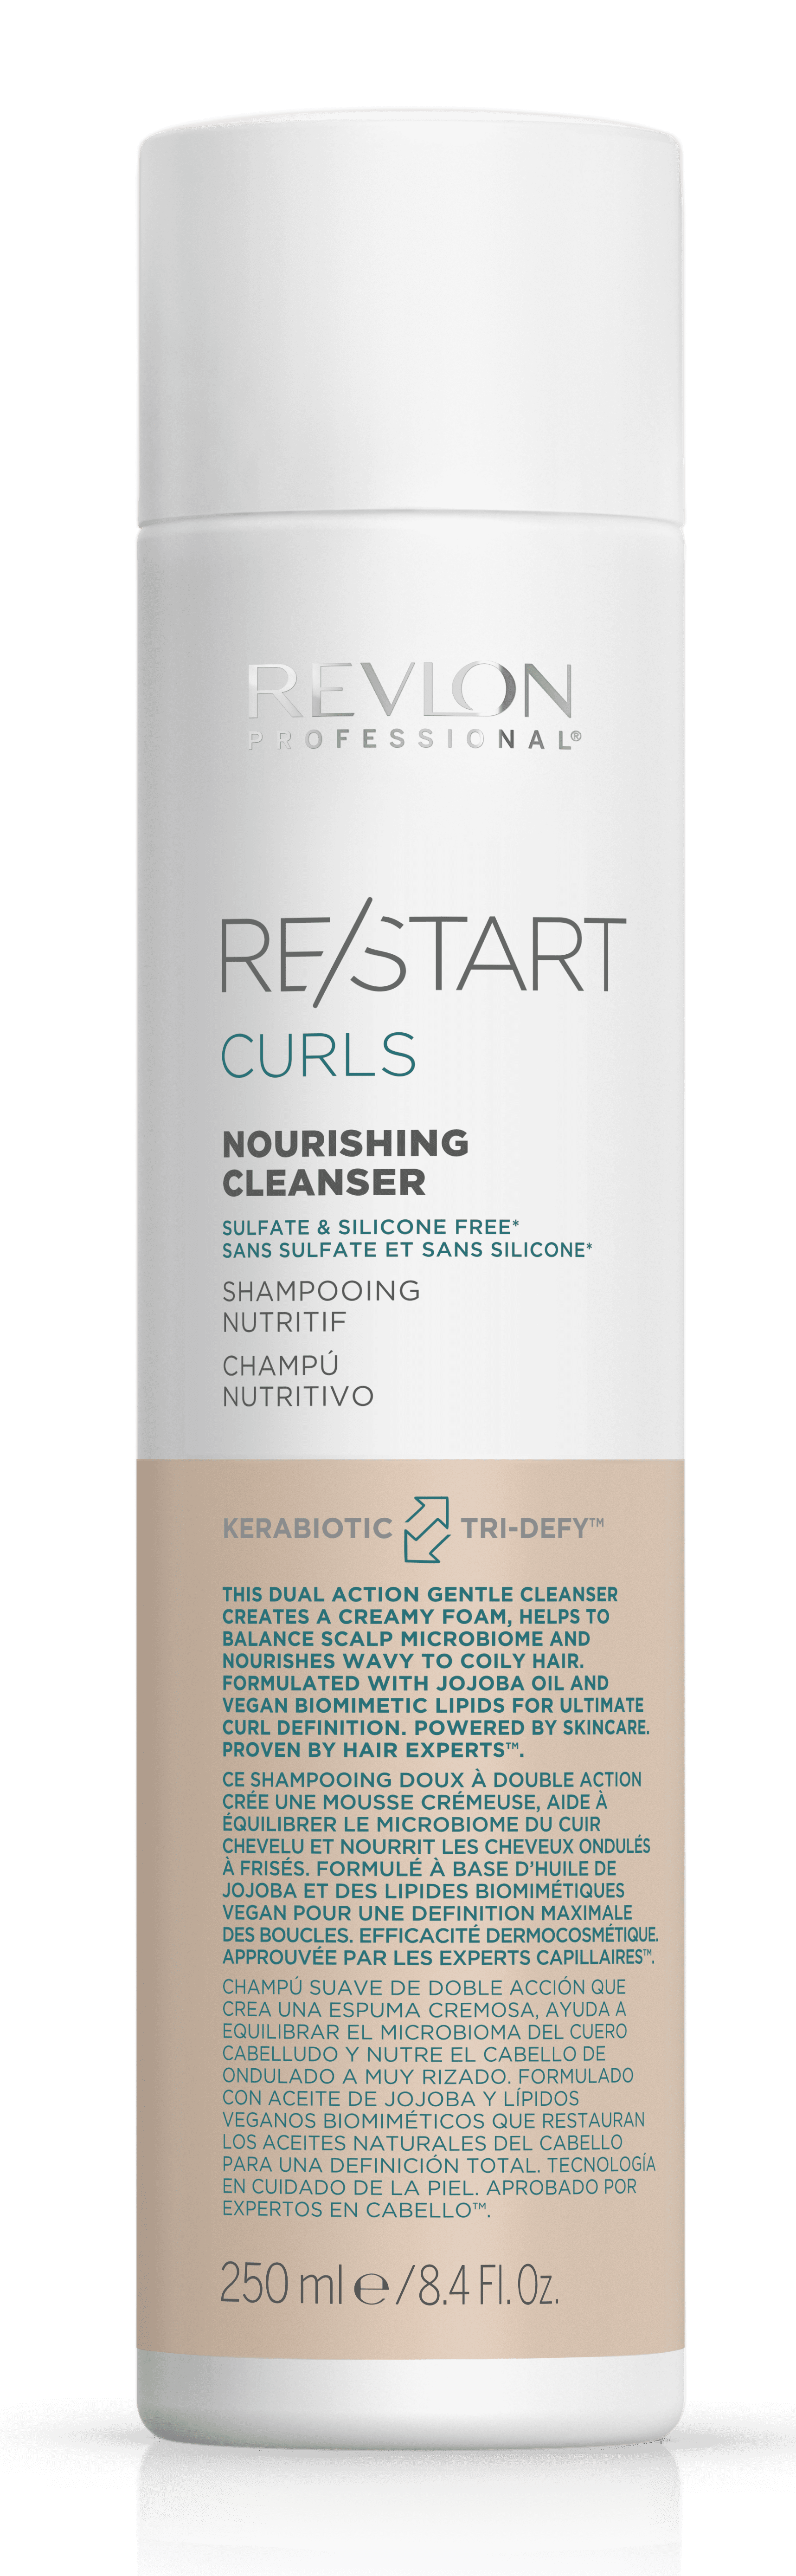 Revlon Restart - Champú Nutritivo CURL para cabello rizado (Apto Método Curly) 250 ml